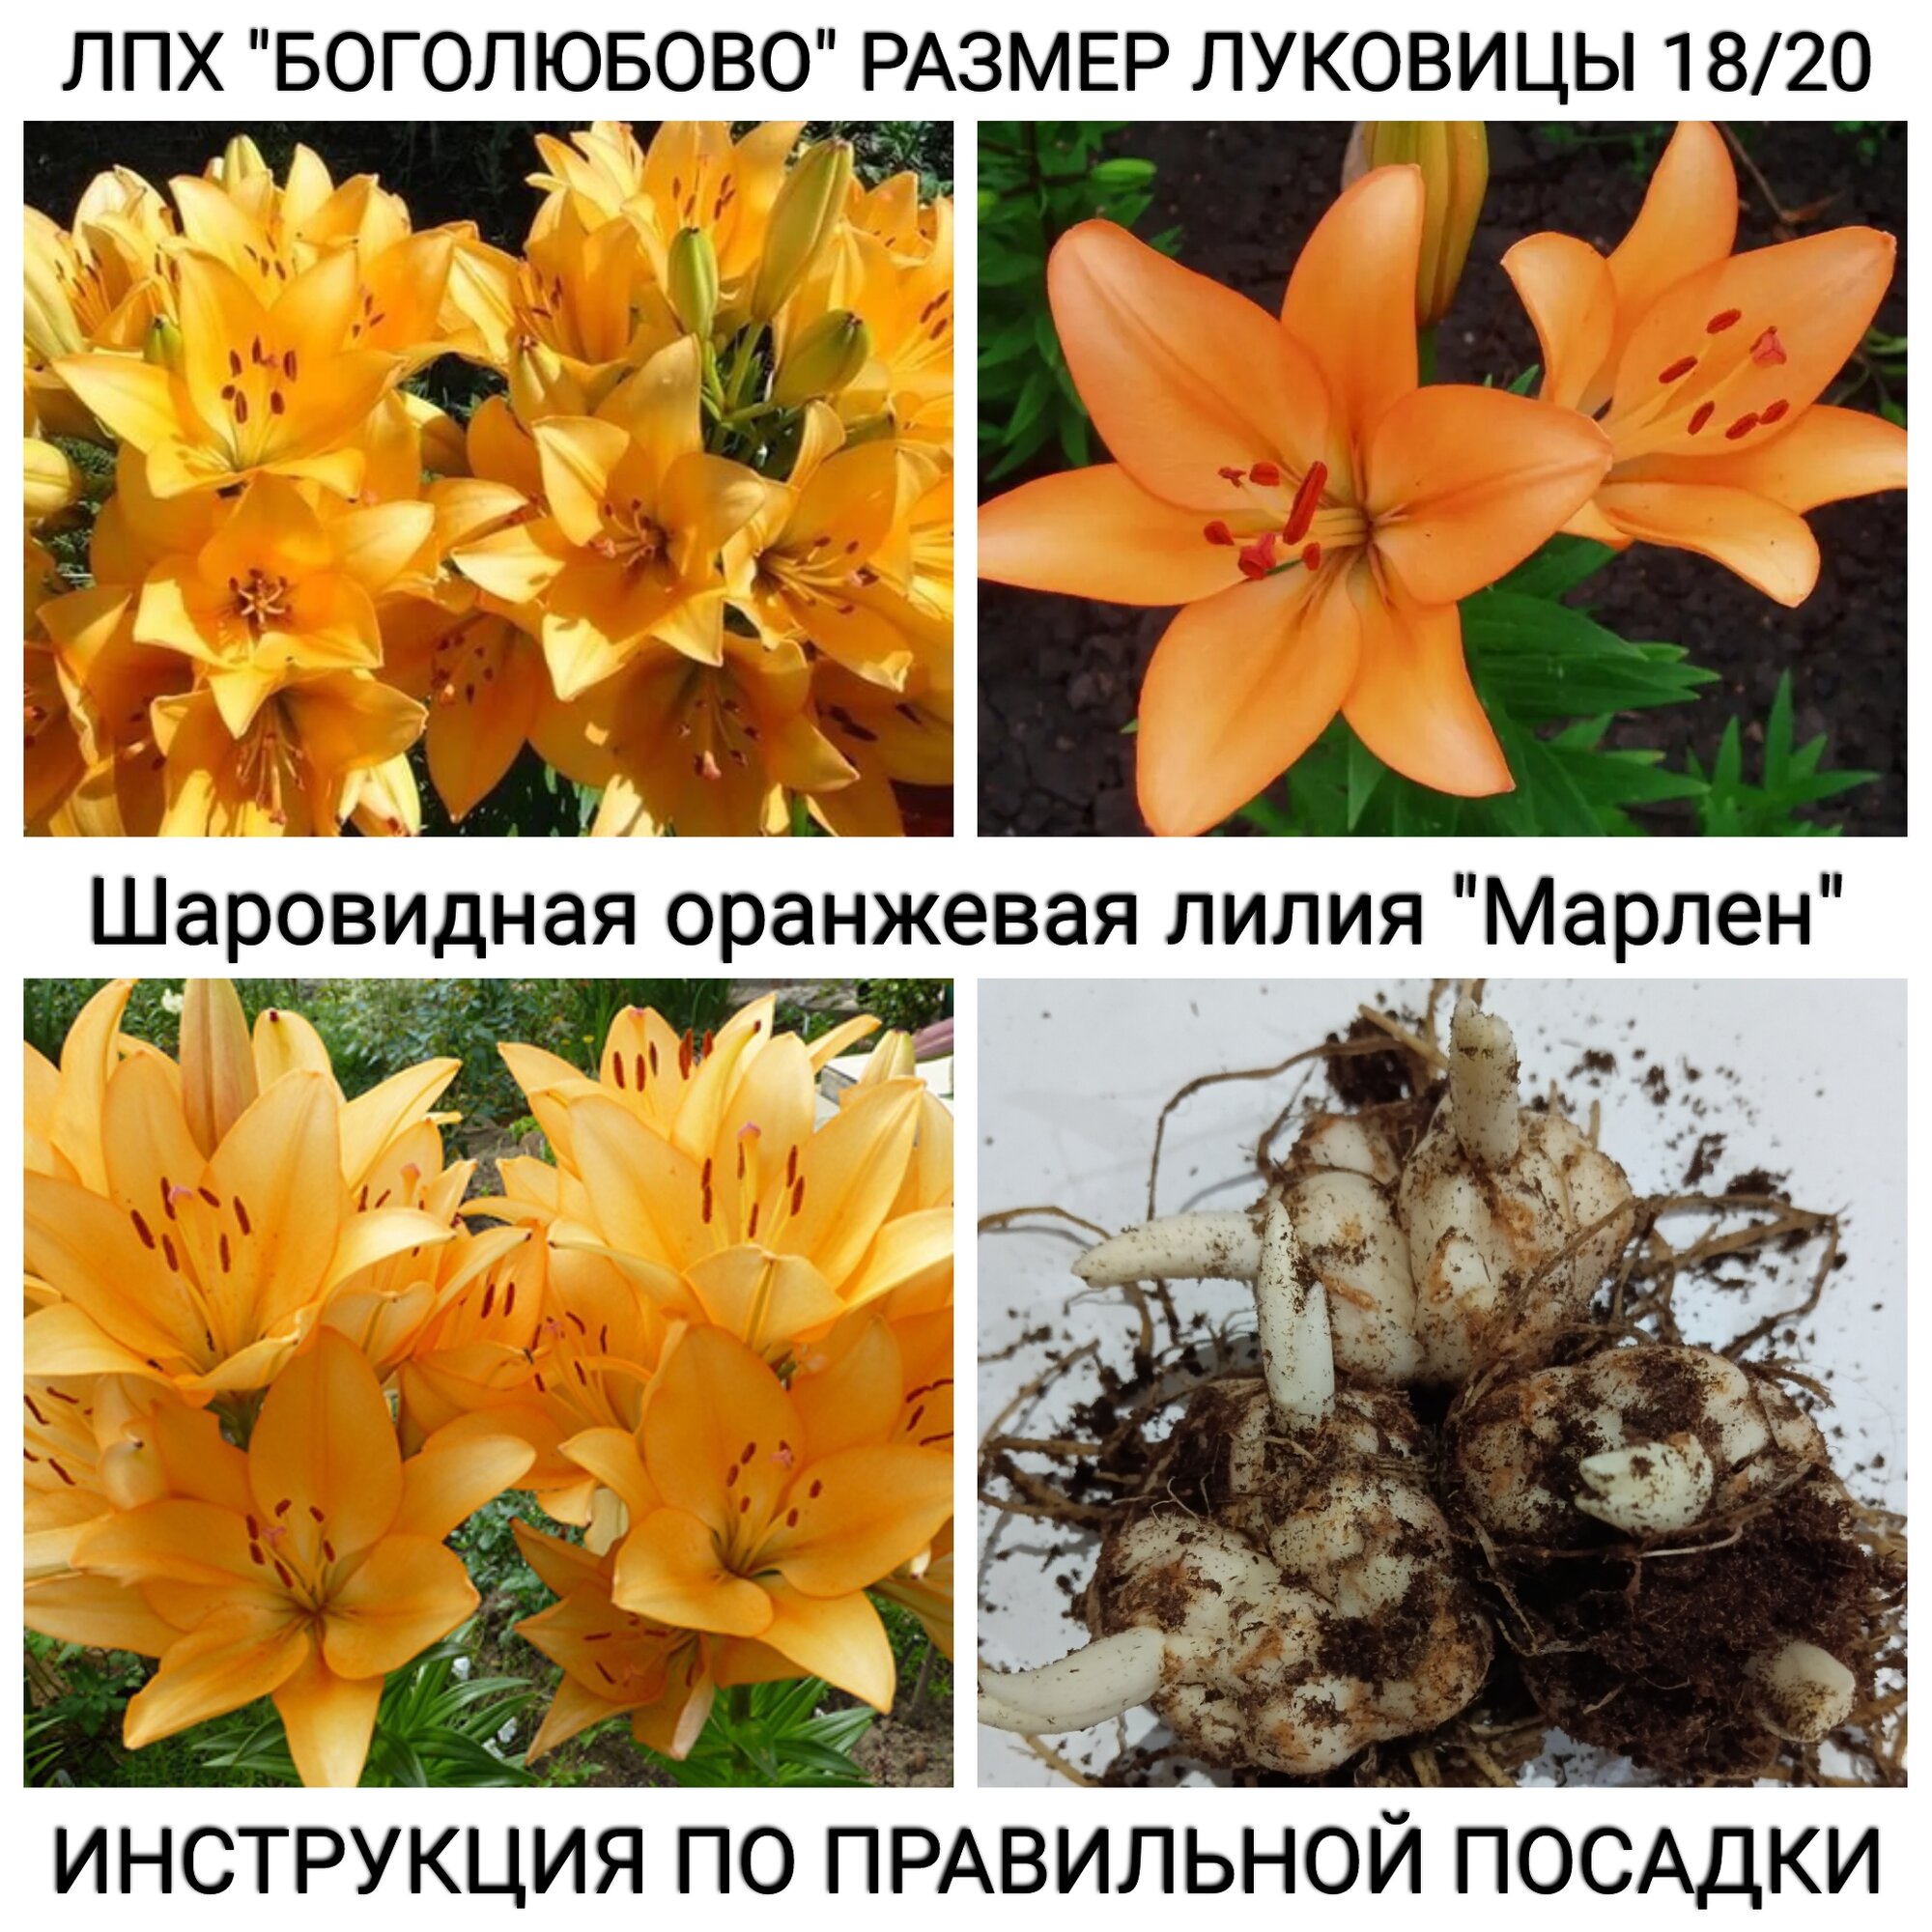 Шаровидная оранжевая лилия "Марлен" Размер луковицы 18/20 упаковка 3 шт.